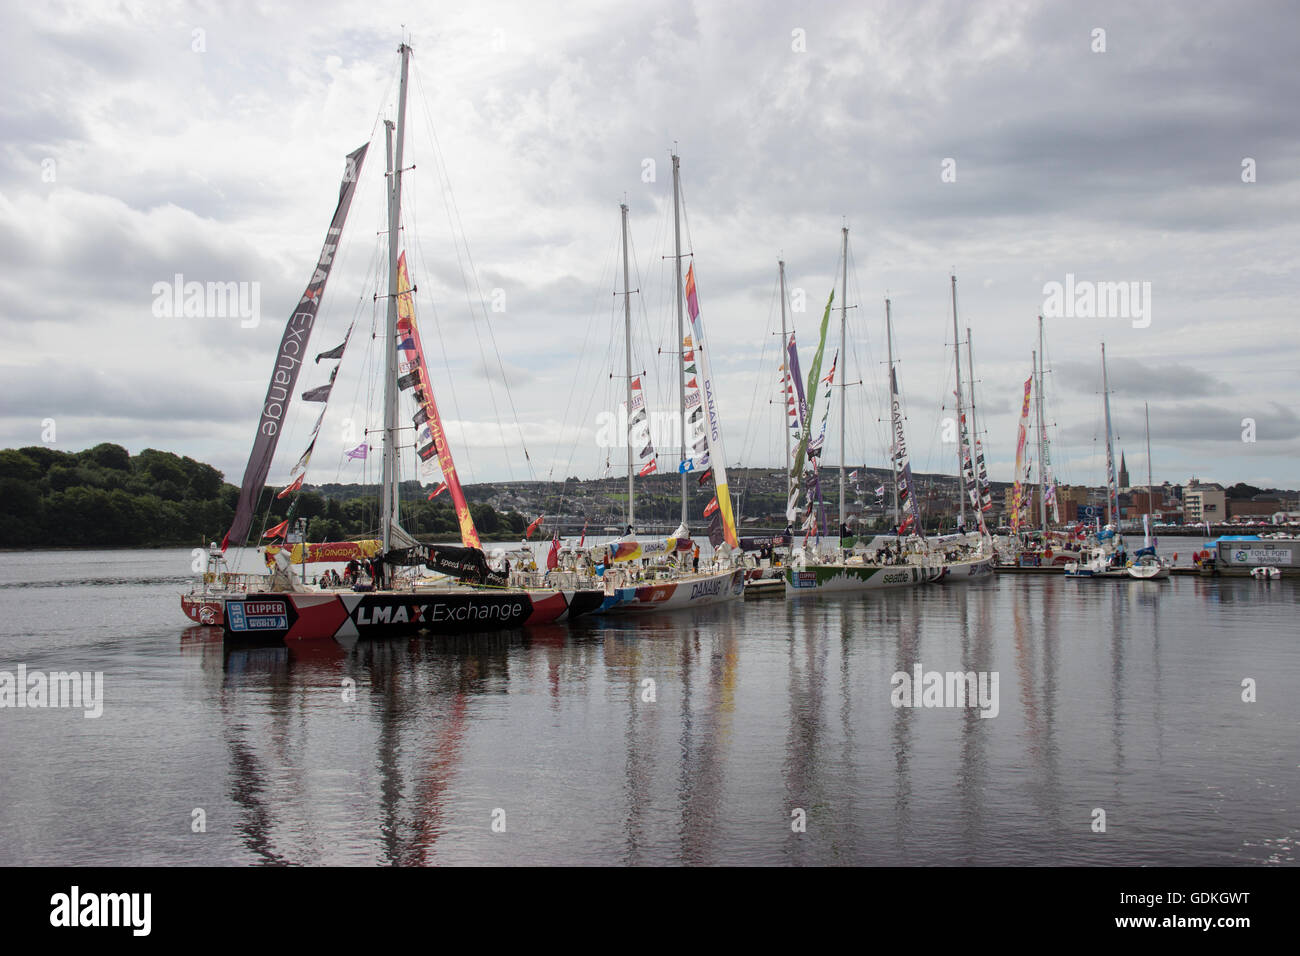 Clipper round the world yacht race dans la région de Derry. Banque D'Images